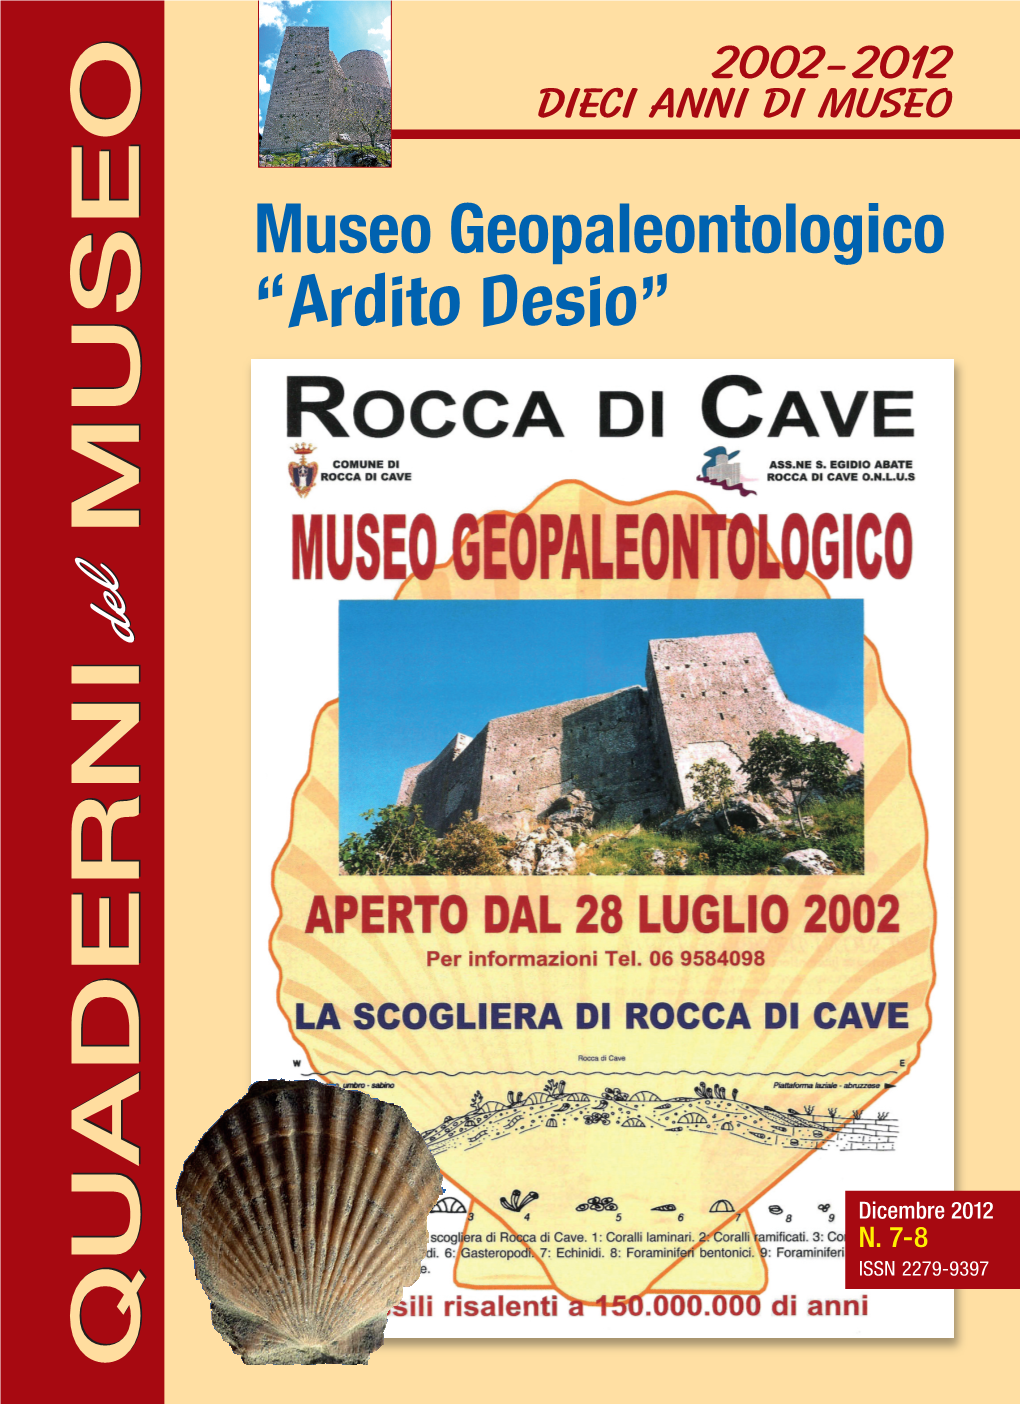 Museo Geopaleontologico “Ardito Desio”